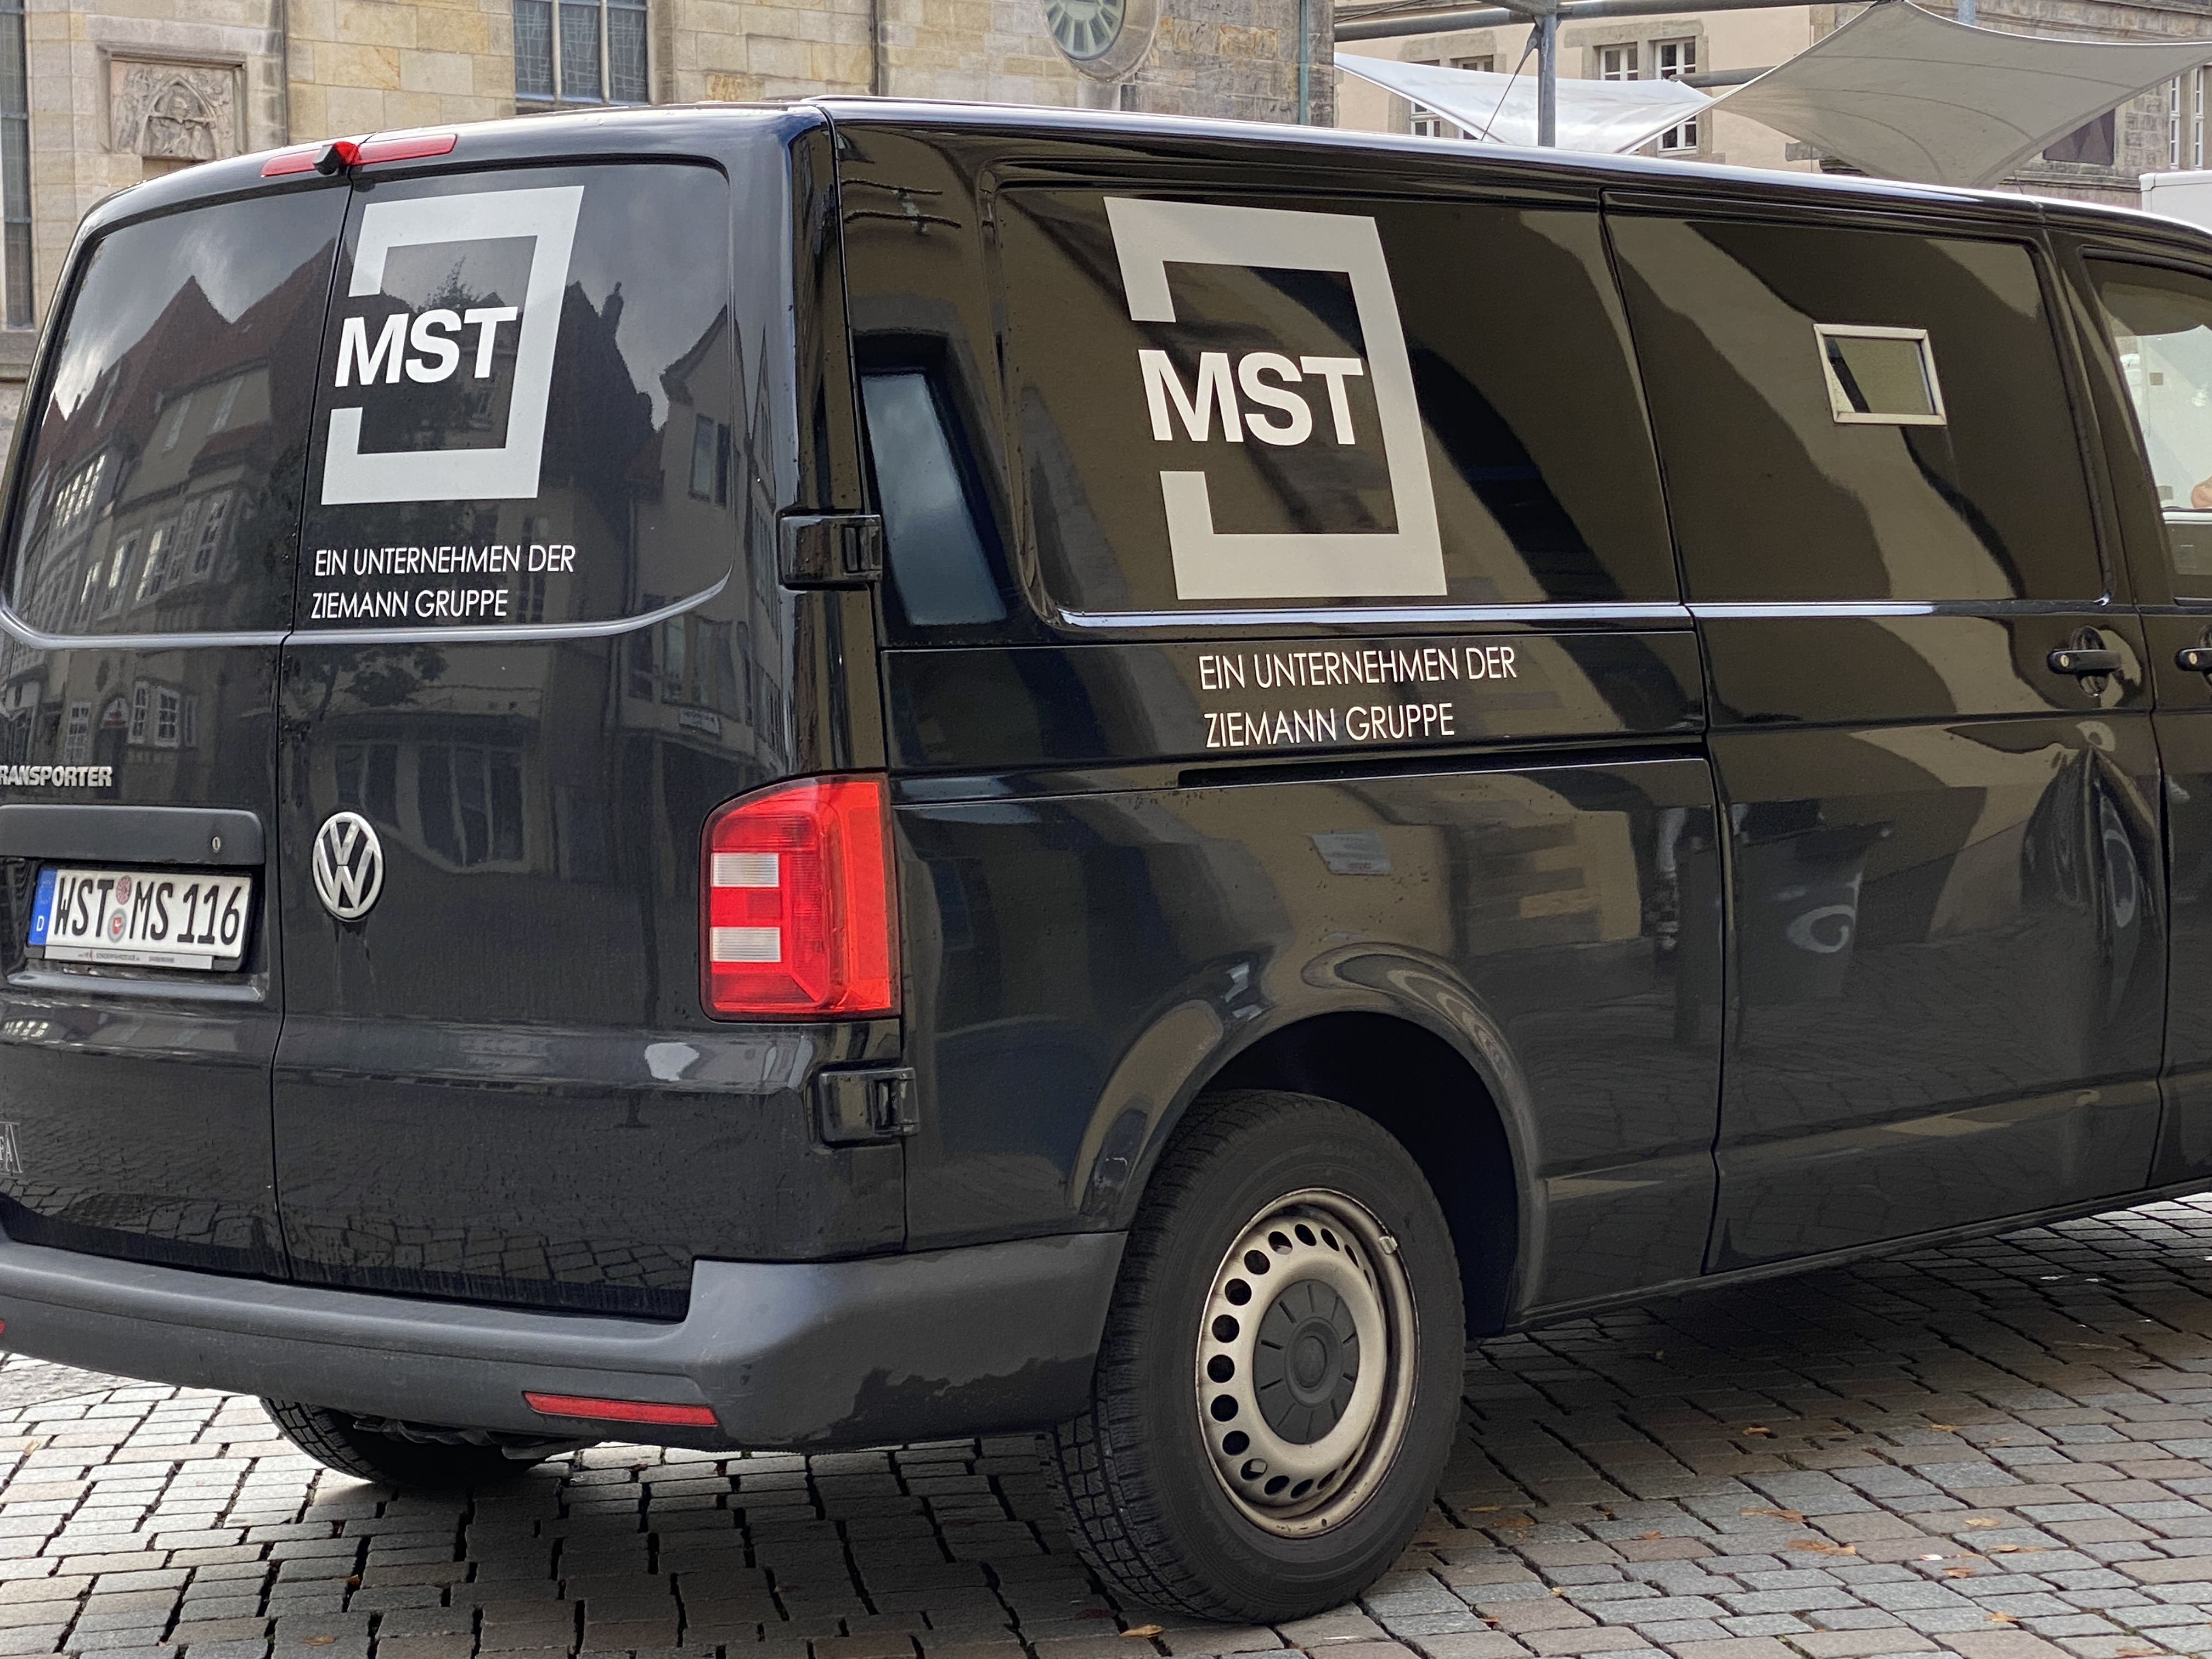 Bild 1 MST-Sicherheitstransportgesellschaft Mecklenburg mbH in Wittenförden